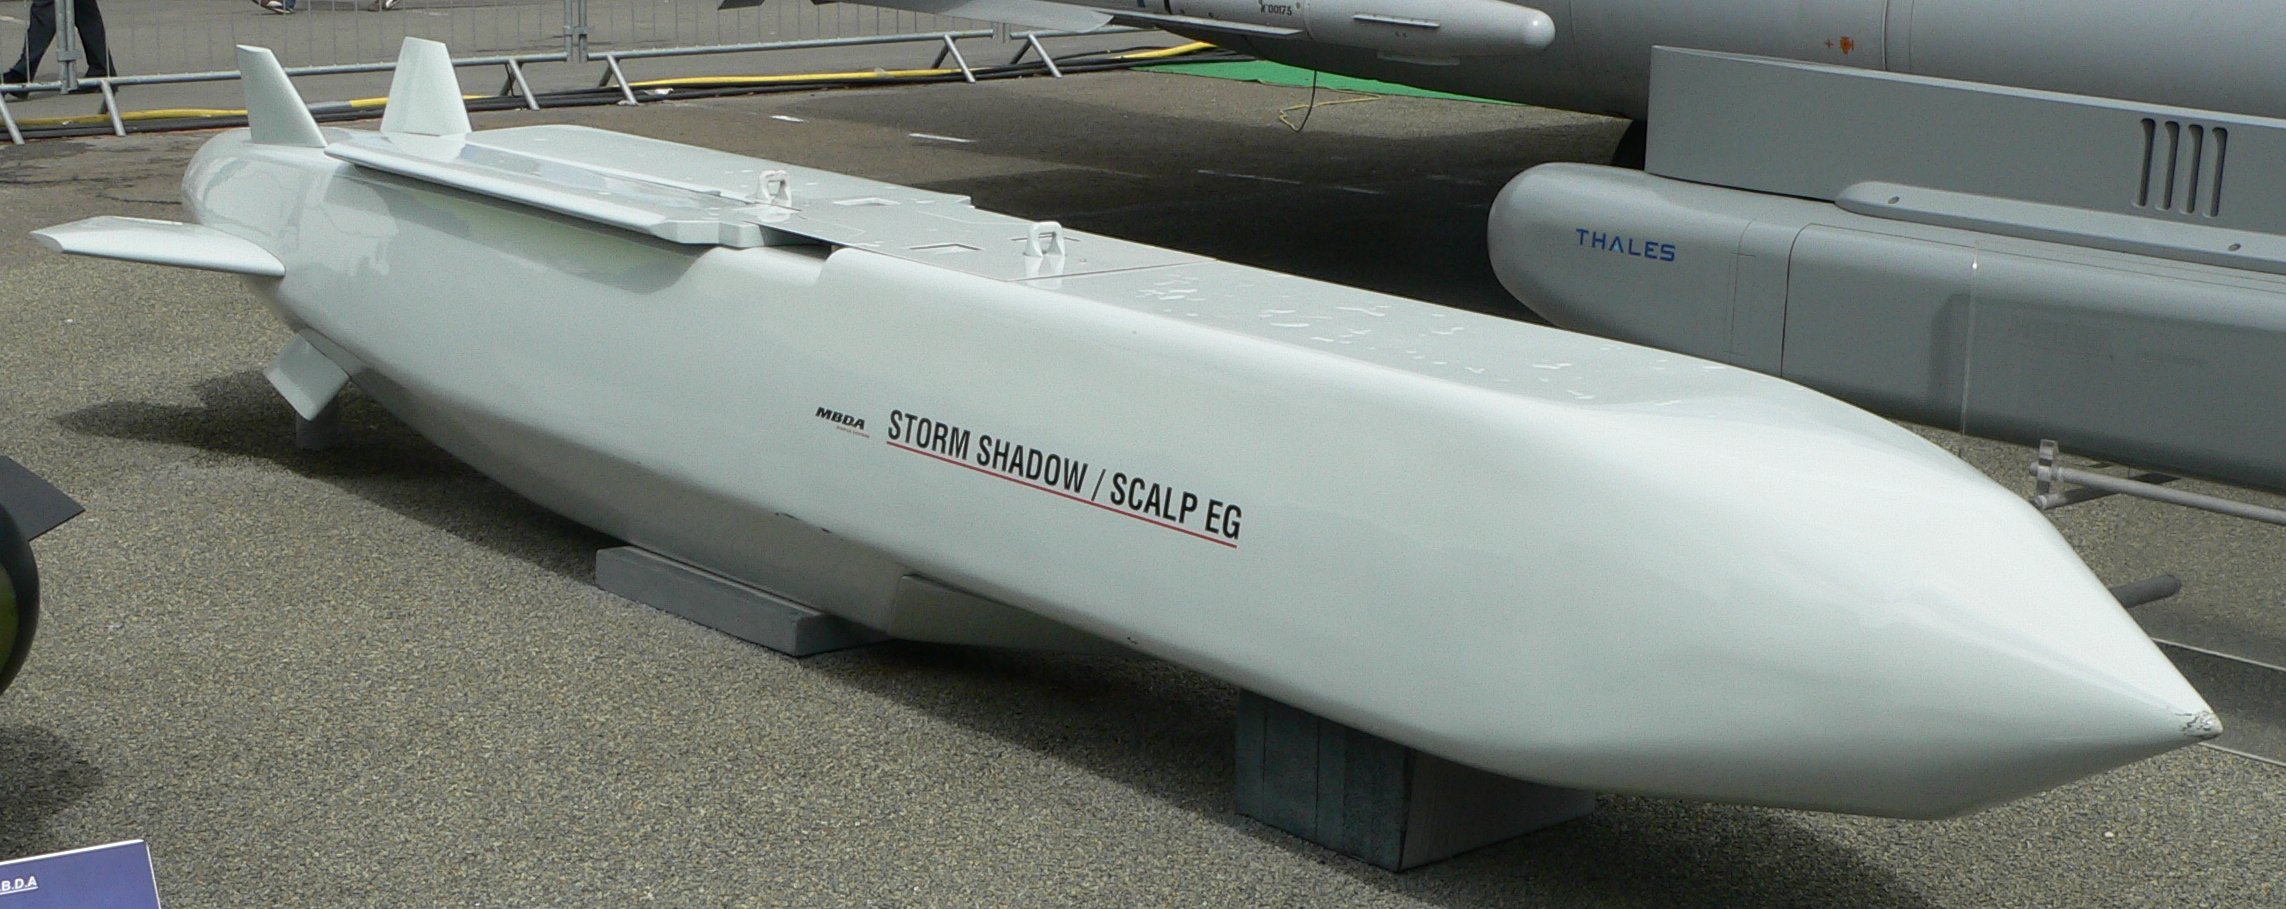 Wielka Brytania może dostarczyć Ukrainie pociski Storm Shadow Cruise Missiles (SCALP), które są wystrzeliwane z samolotów i mogą trafiać w cele na odległość około 600 km